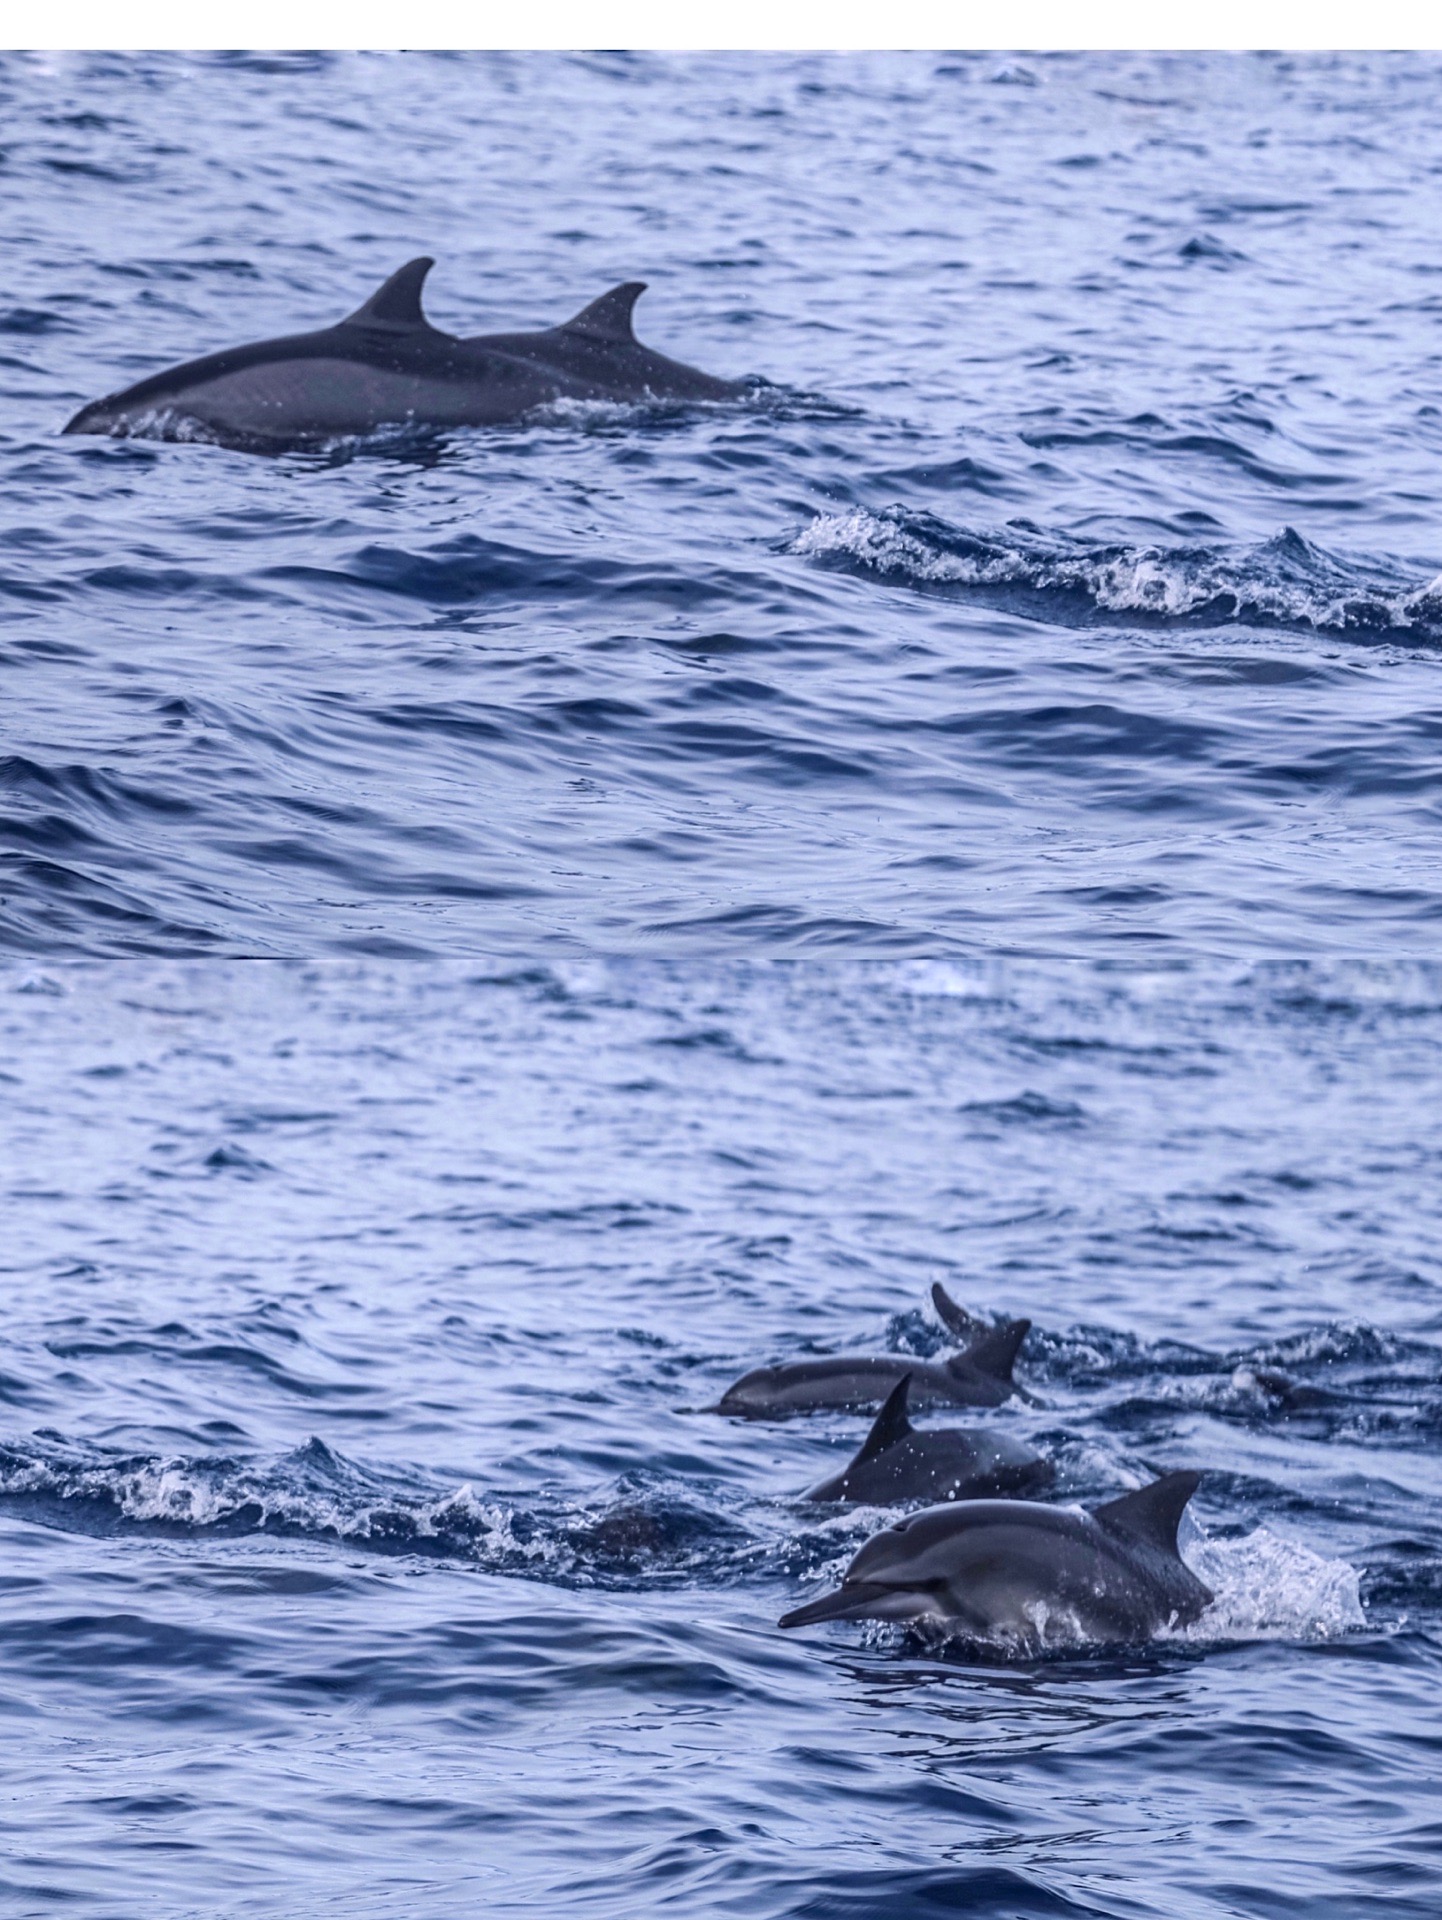 菲律宾 薄荷岛 出海一日游最新不踩坑体验  📮经典玩法： ■出海一日游： 🐬追逐海豚 🌊浮潜观断层 